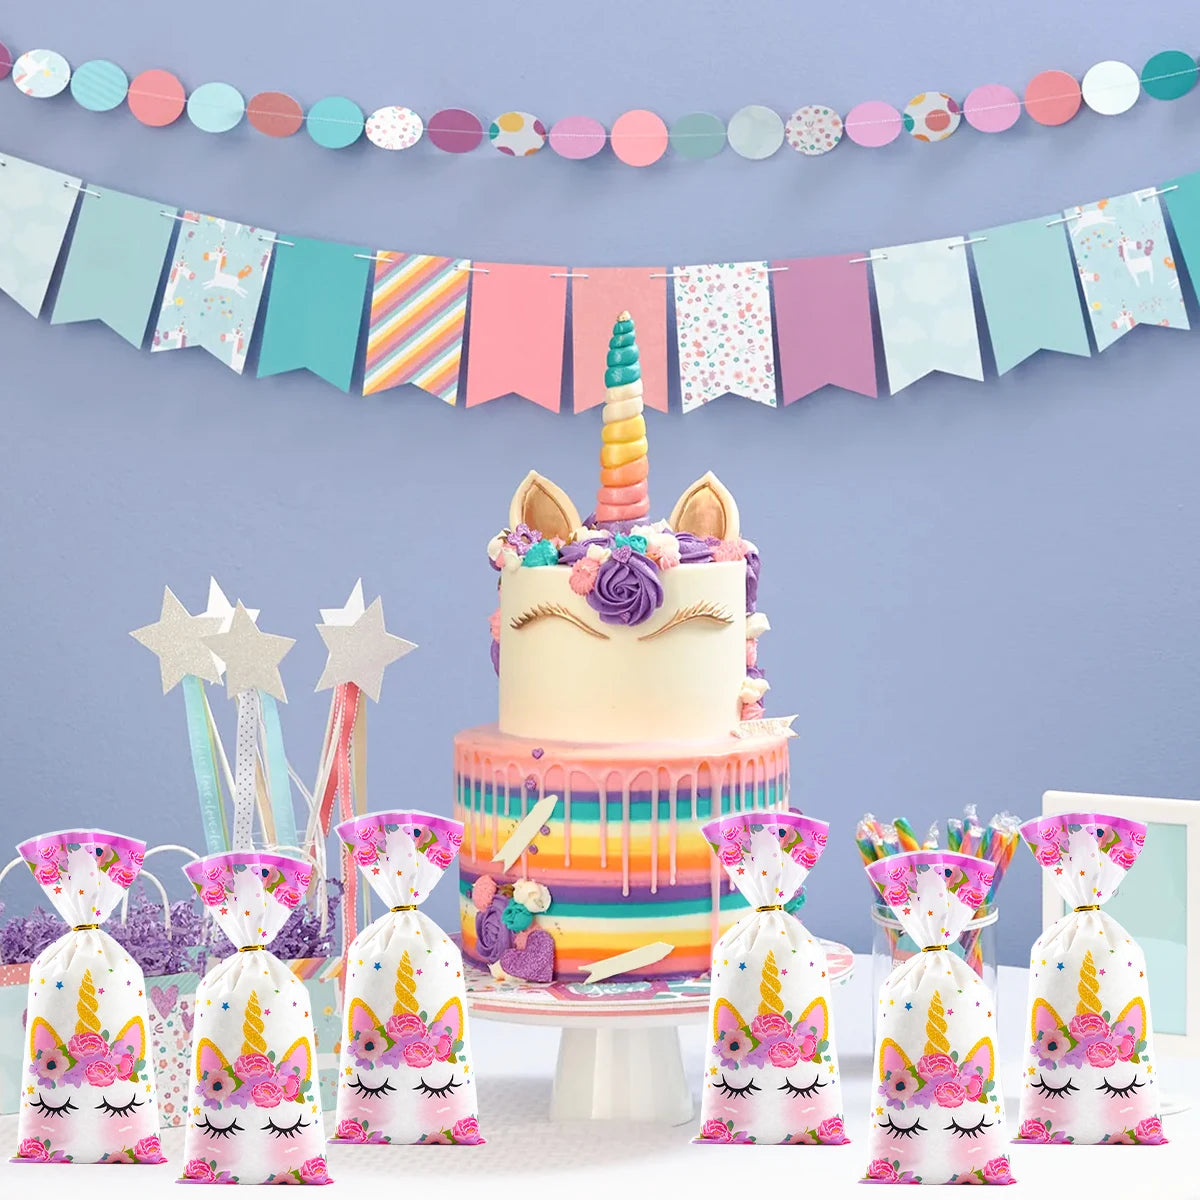 유니콘 생일 파티 장식 쿠키 사탕 선물 가방 유니콘 생일 파티 장식 아이 소녀 베이비 샤워 웨딩 용품